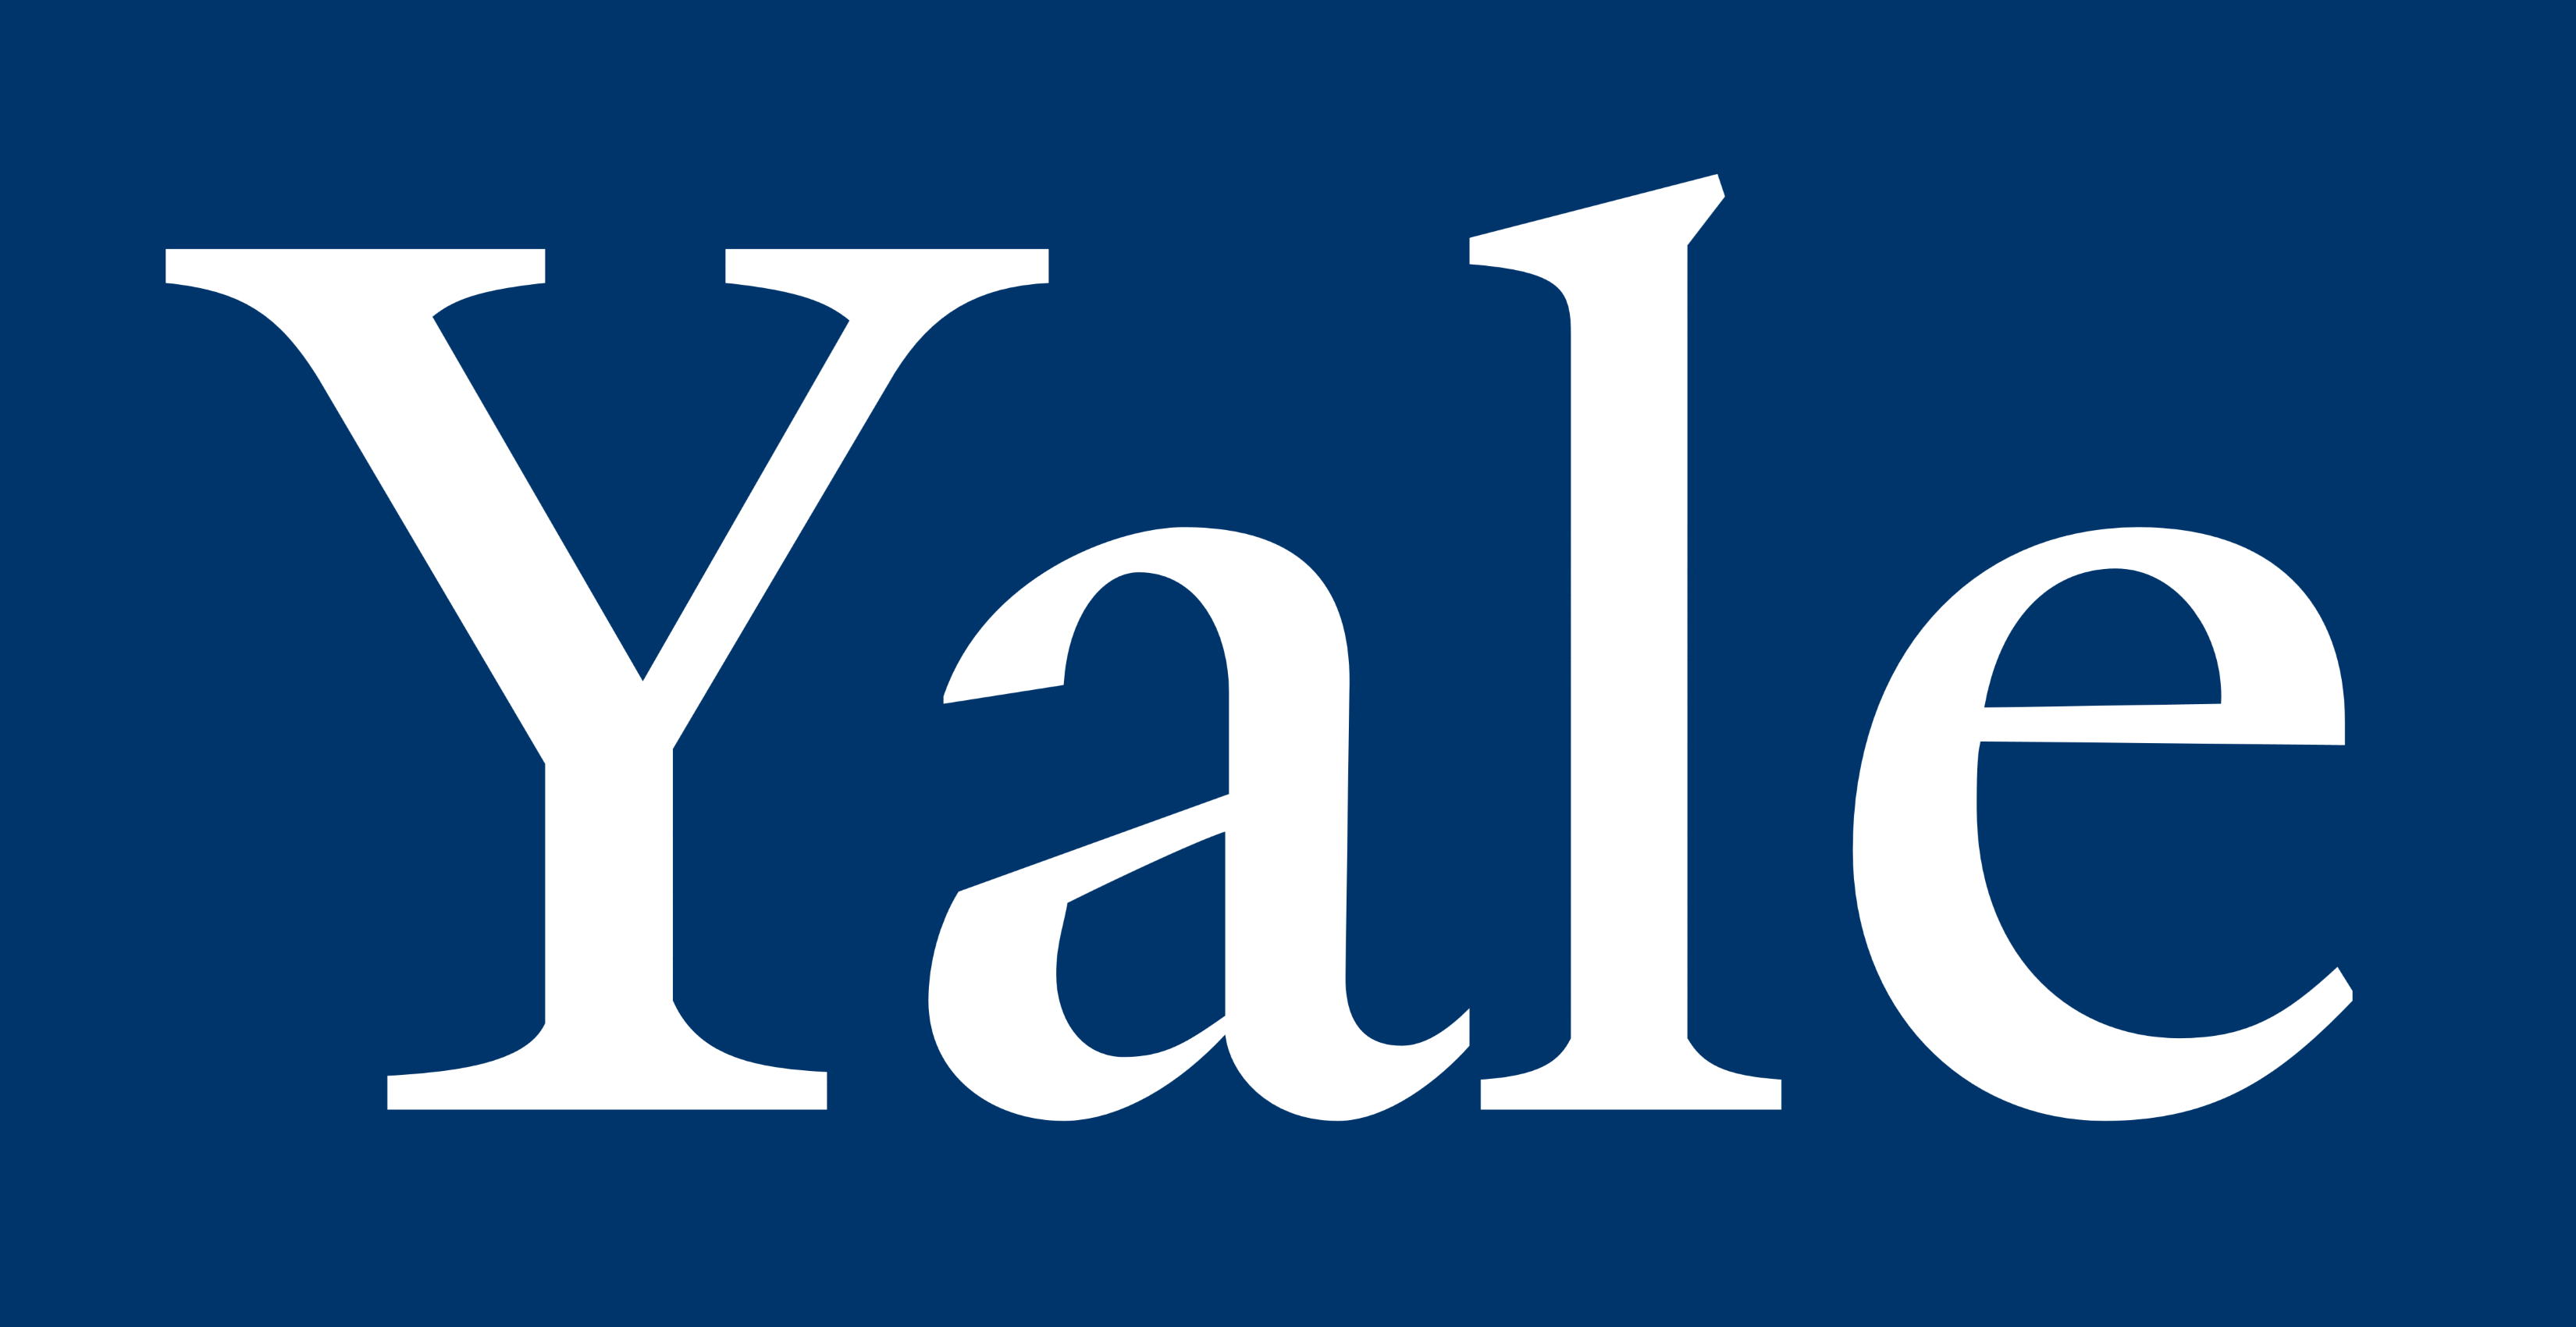 Yale Logo - Yale University – Logos Download